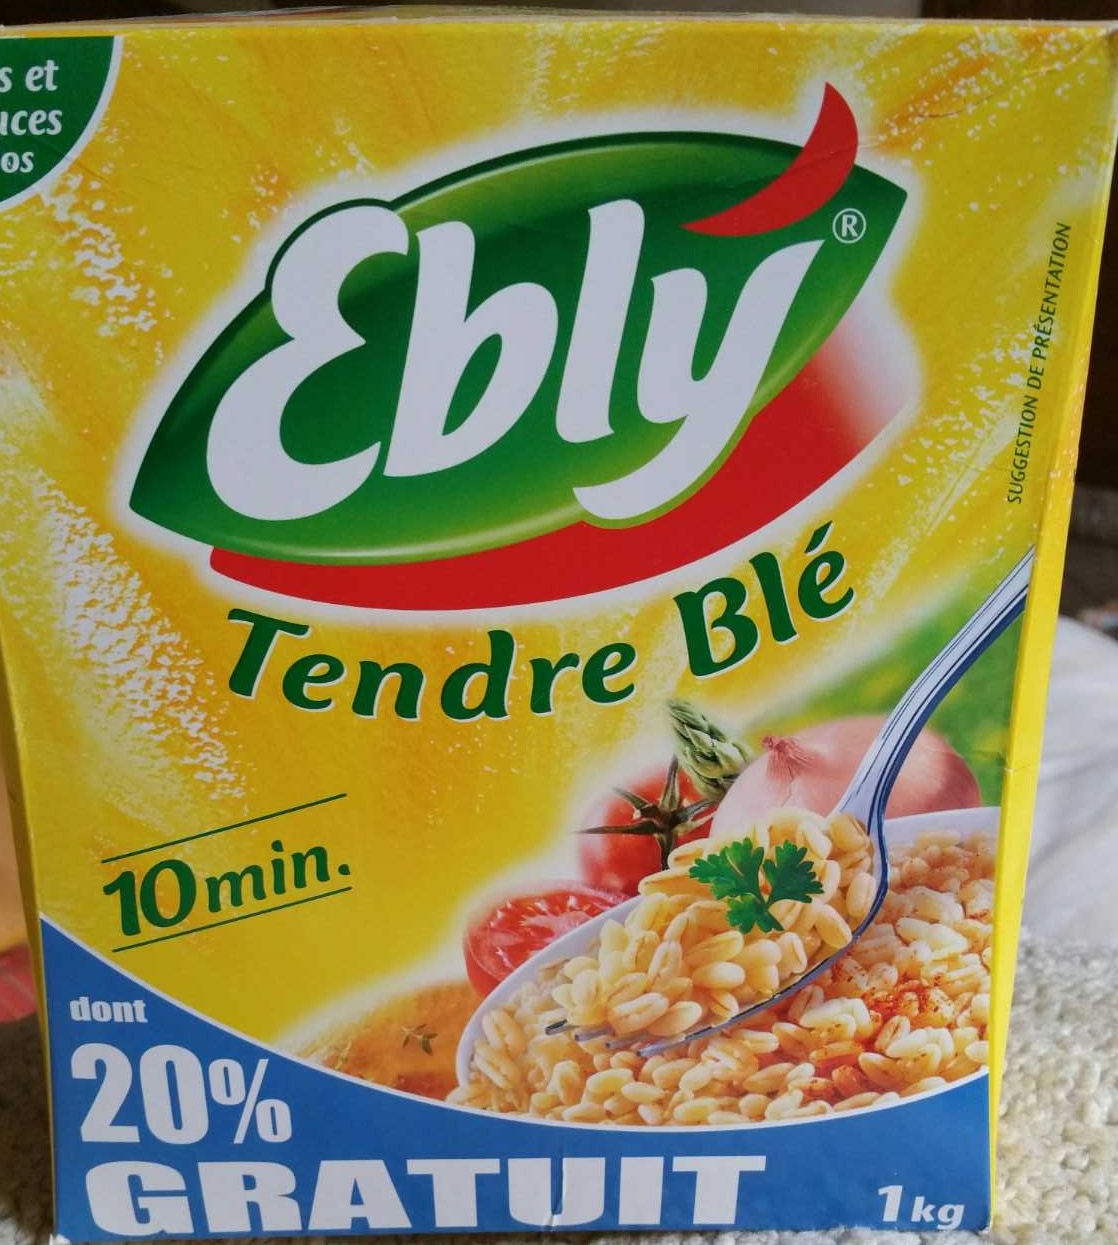 Tendre Blé - Produit